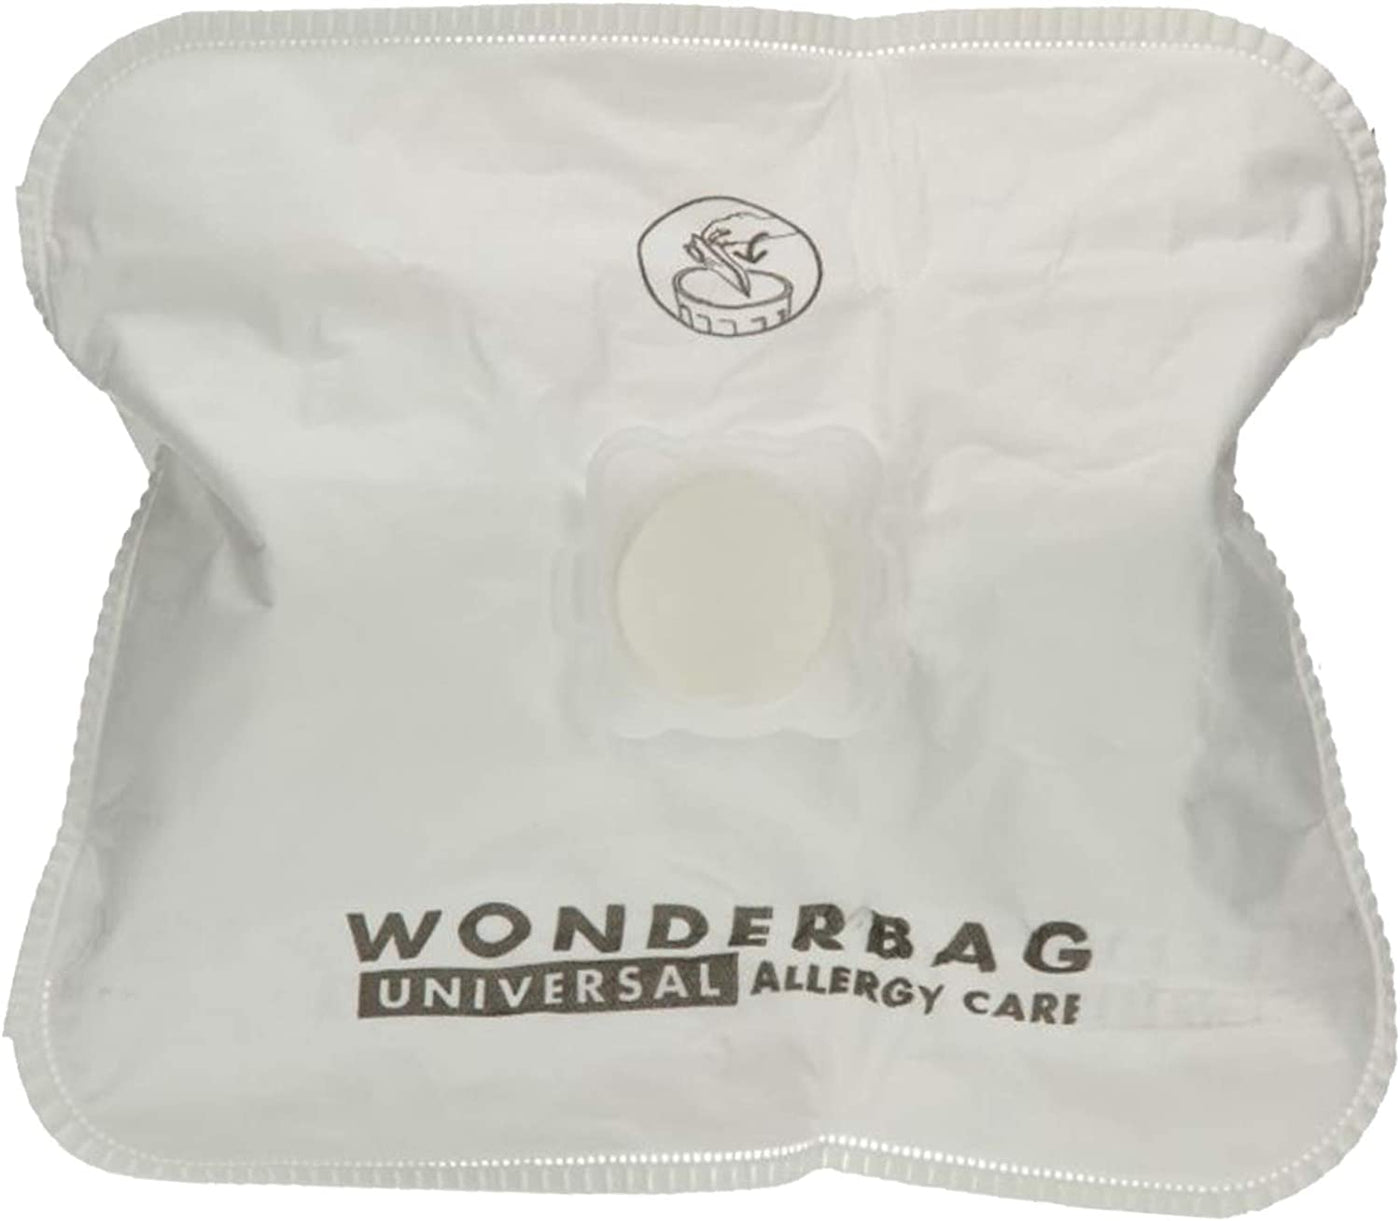 Rowenta Wonderbag Allergy Care Vacuum Bags 4 Pk